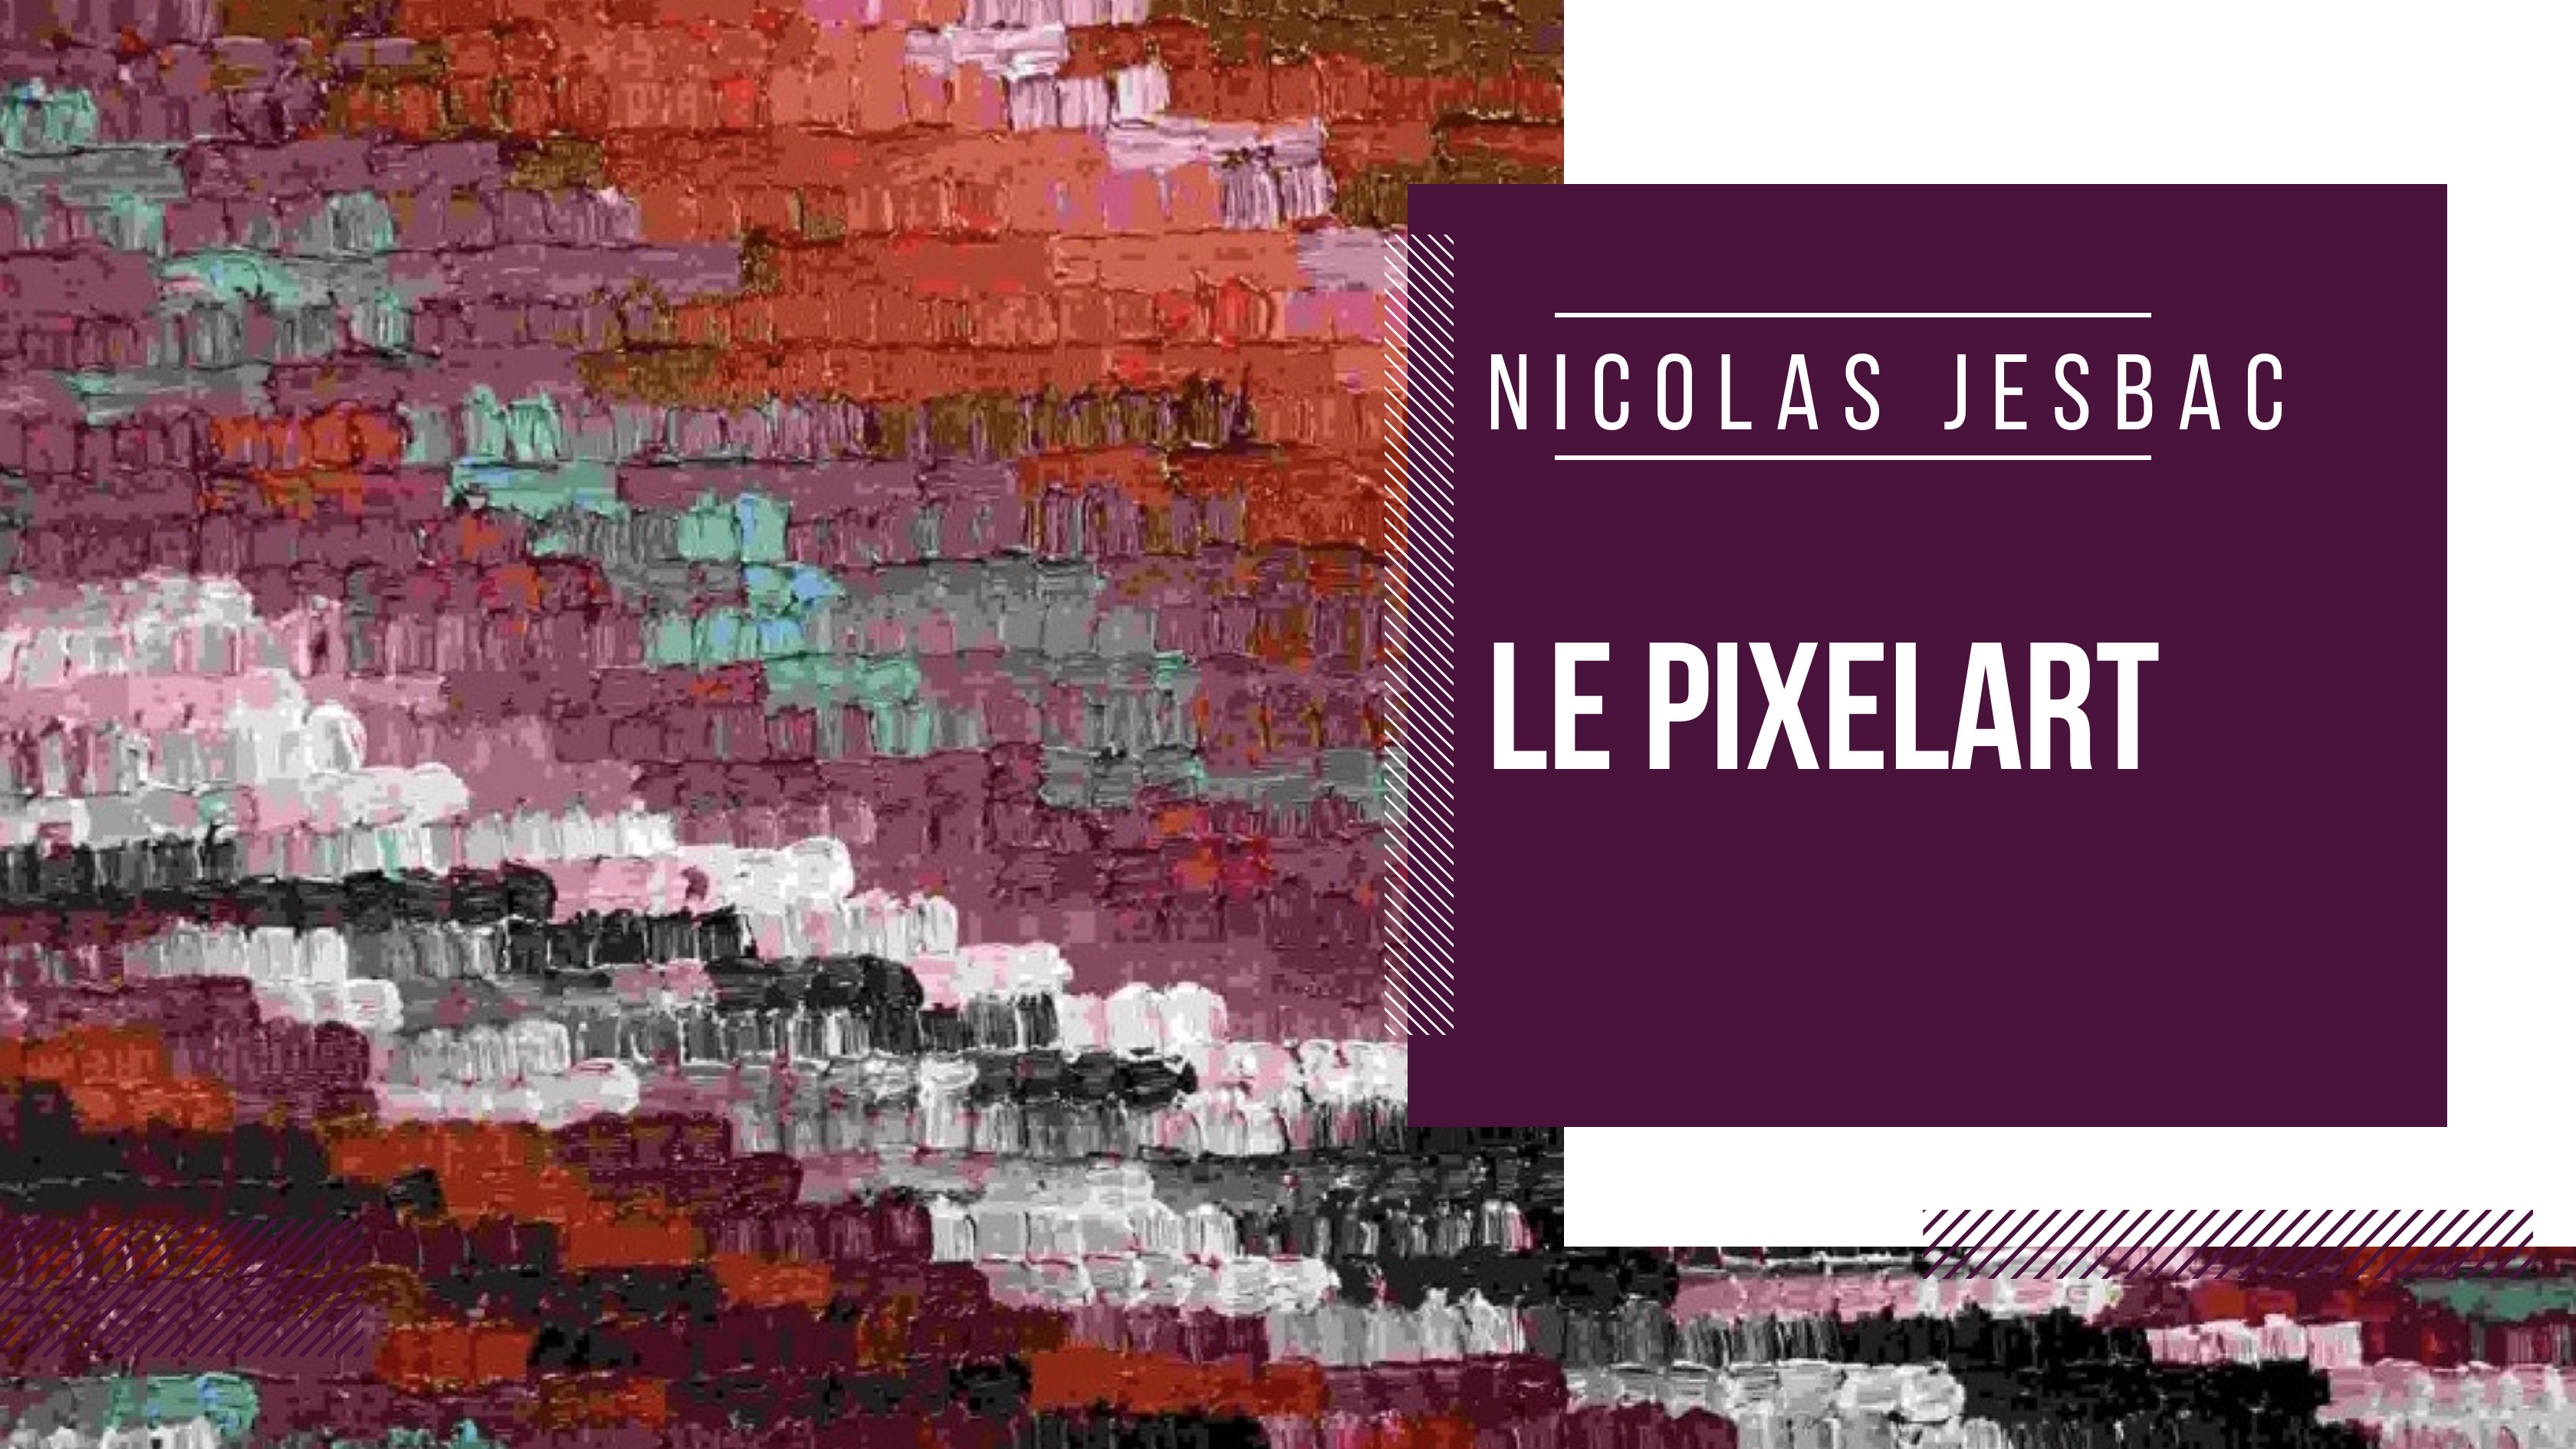 Découvrez l'univers captivant du pixelart de Nicolas Jesbac, où la fusion du réel et du virtuel crée une expérience artistique unique.